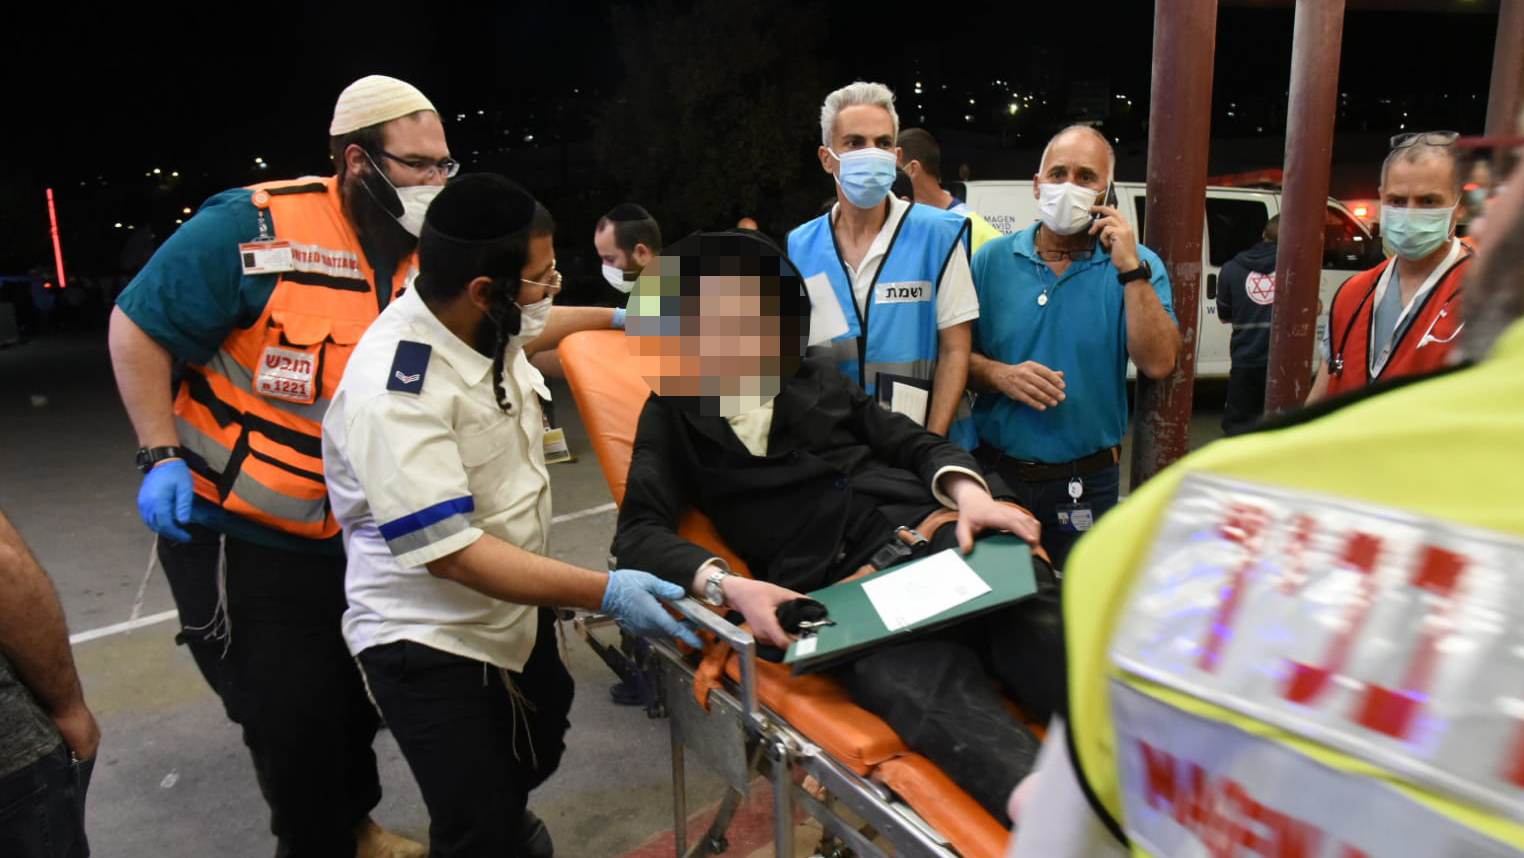 פינוי פצועים בית חולים זיו לאחר נפילה הילולה הר מירון ל"ג בעומר עומס מנחת 